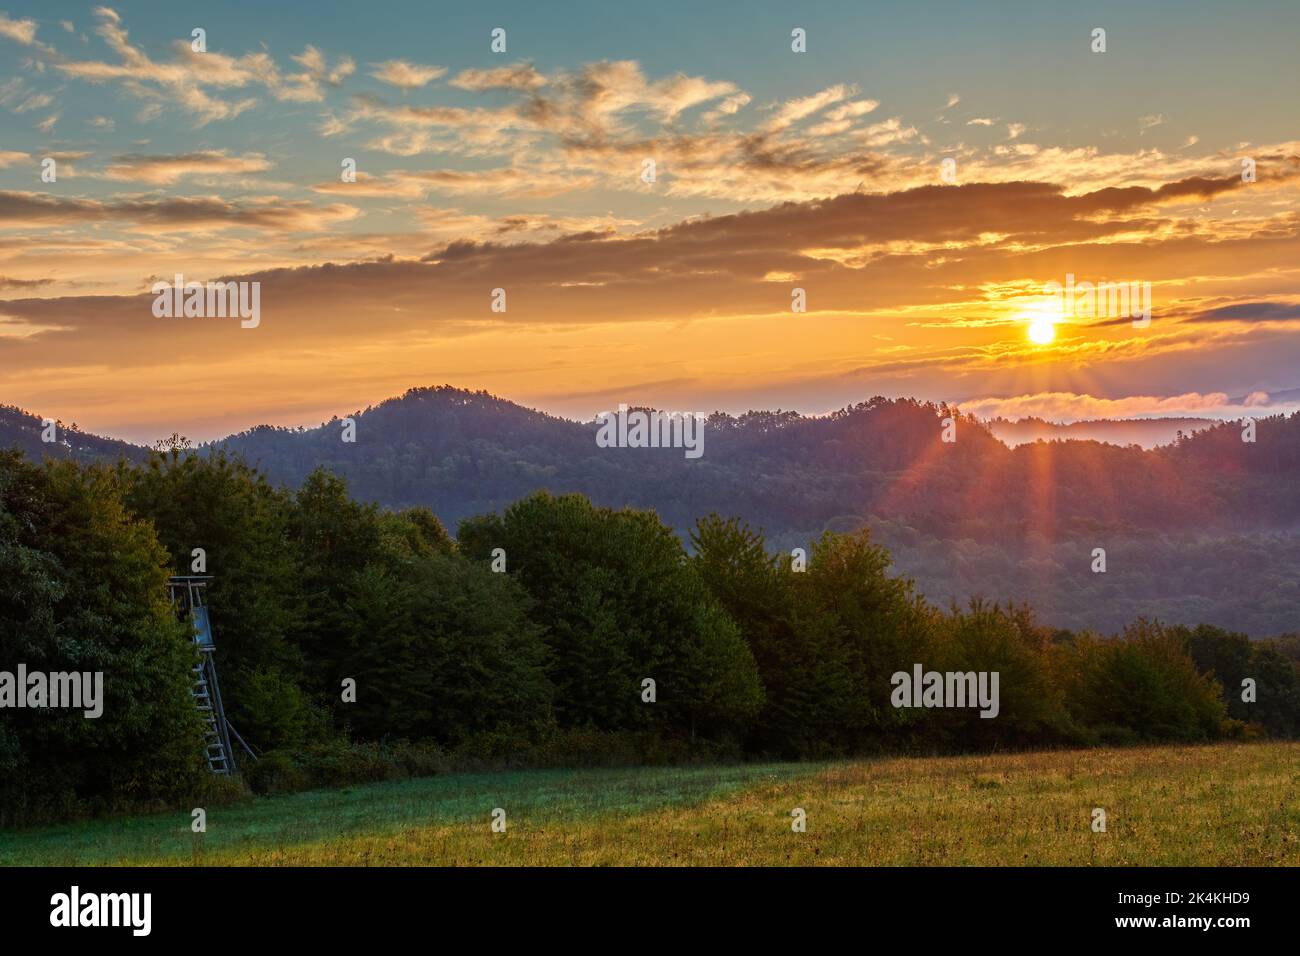 Sonnenaufgang in der Berglandschaft mit sunstar. Mit Bäumen und Hügeln im Hintergrund. Blauer Himmel, bunte Wolken. Natur Europas. Vrsatec, Slowakei. Stockfoto